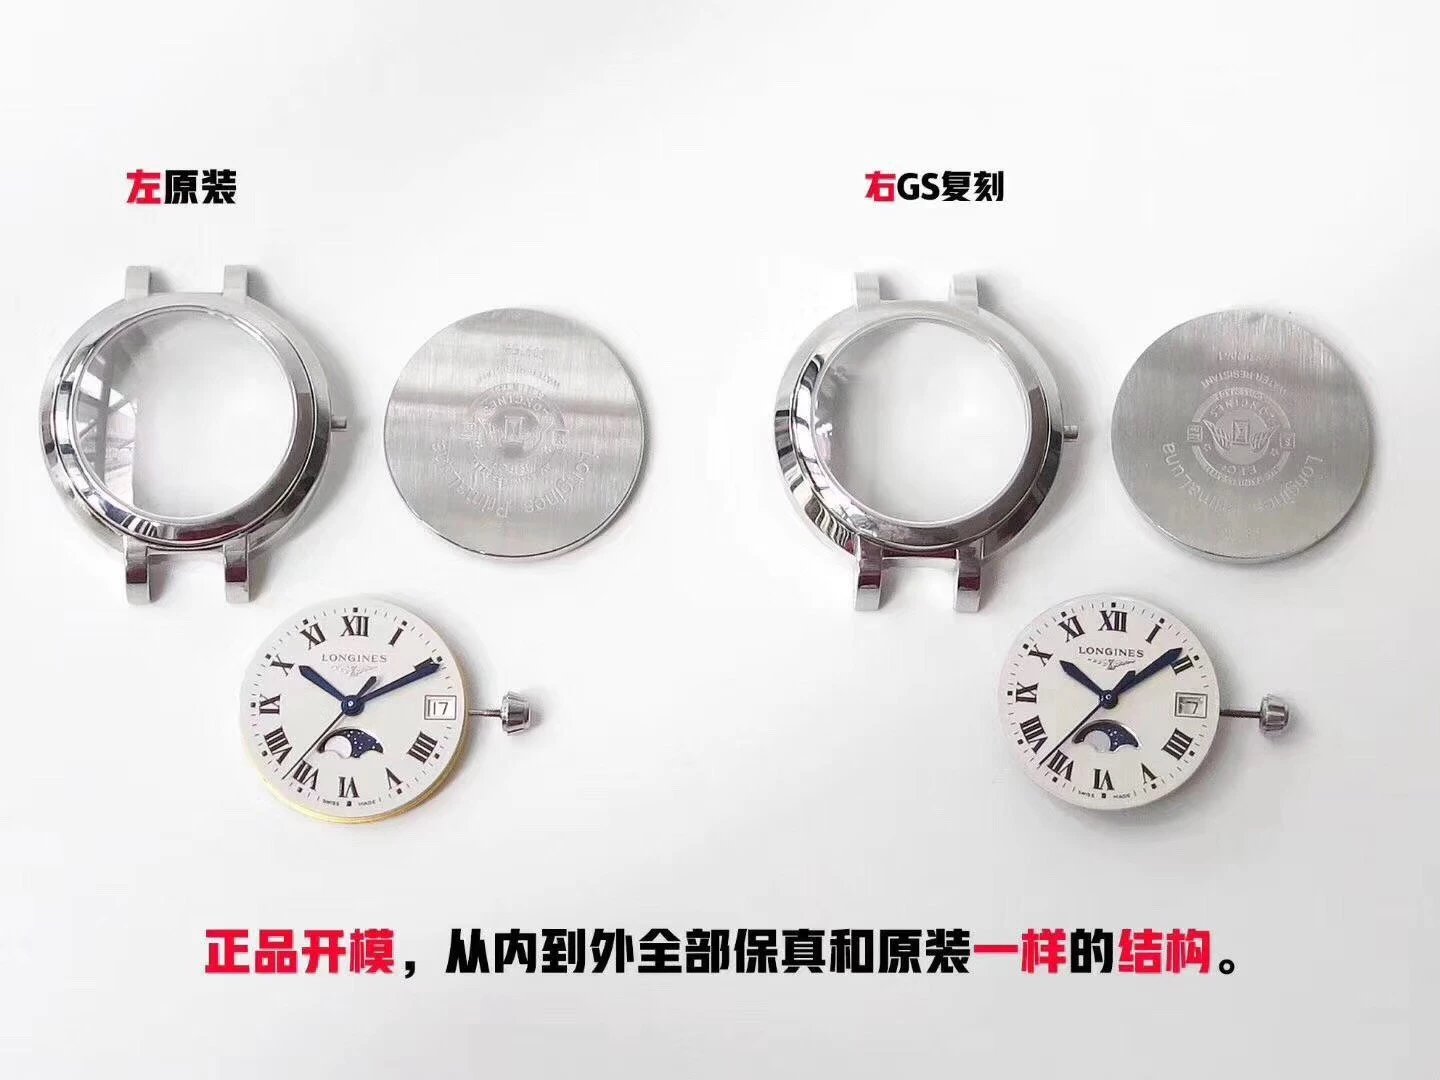 gs厂浪琴心月系列月相女士腕表，月相功能同步原版,尺寸30.5X9.4mm 采用带有月相功能的瑞士石英机芯女表